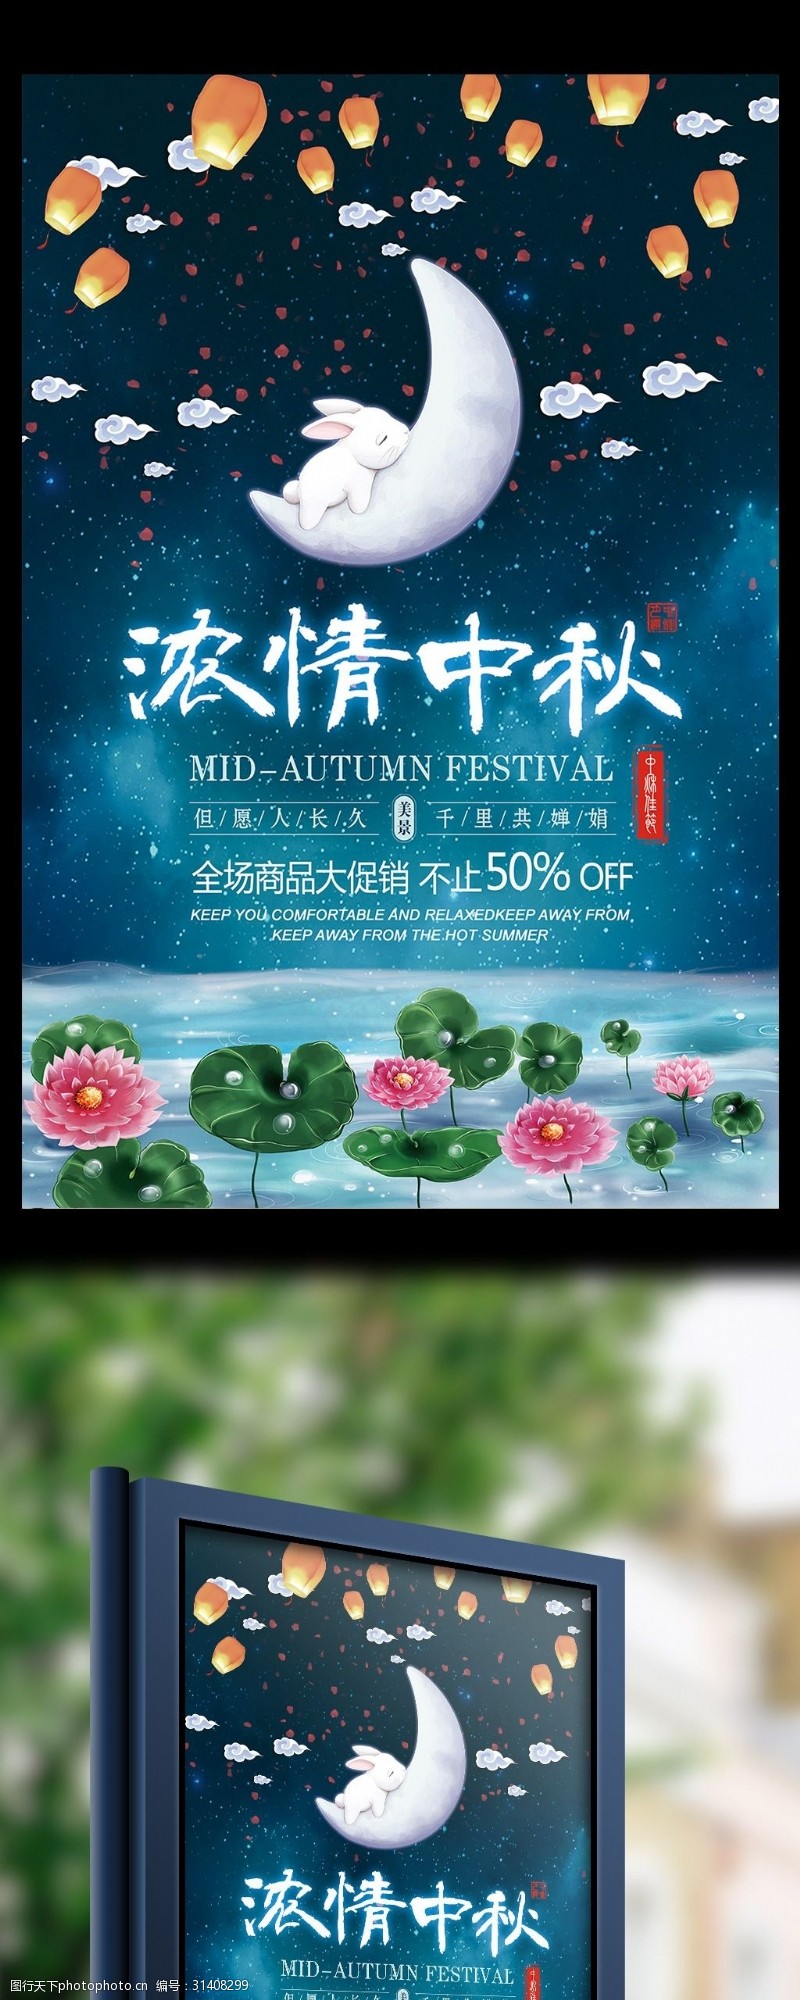 中秋节宣传大气蓝色背景浓情中秋传统节日海报设计